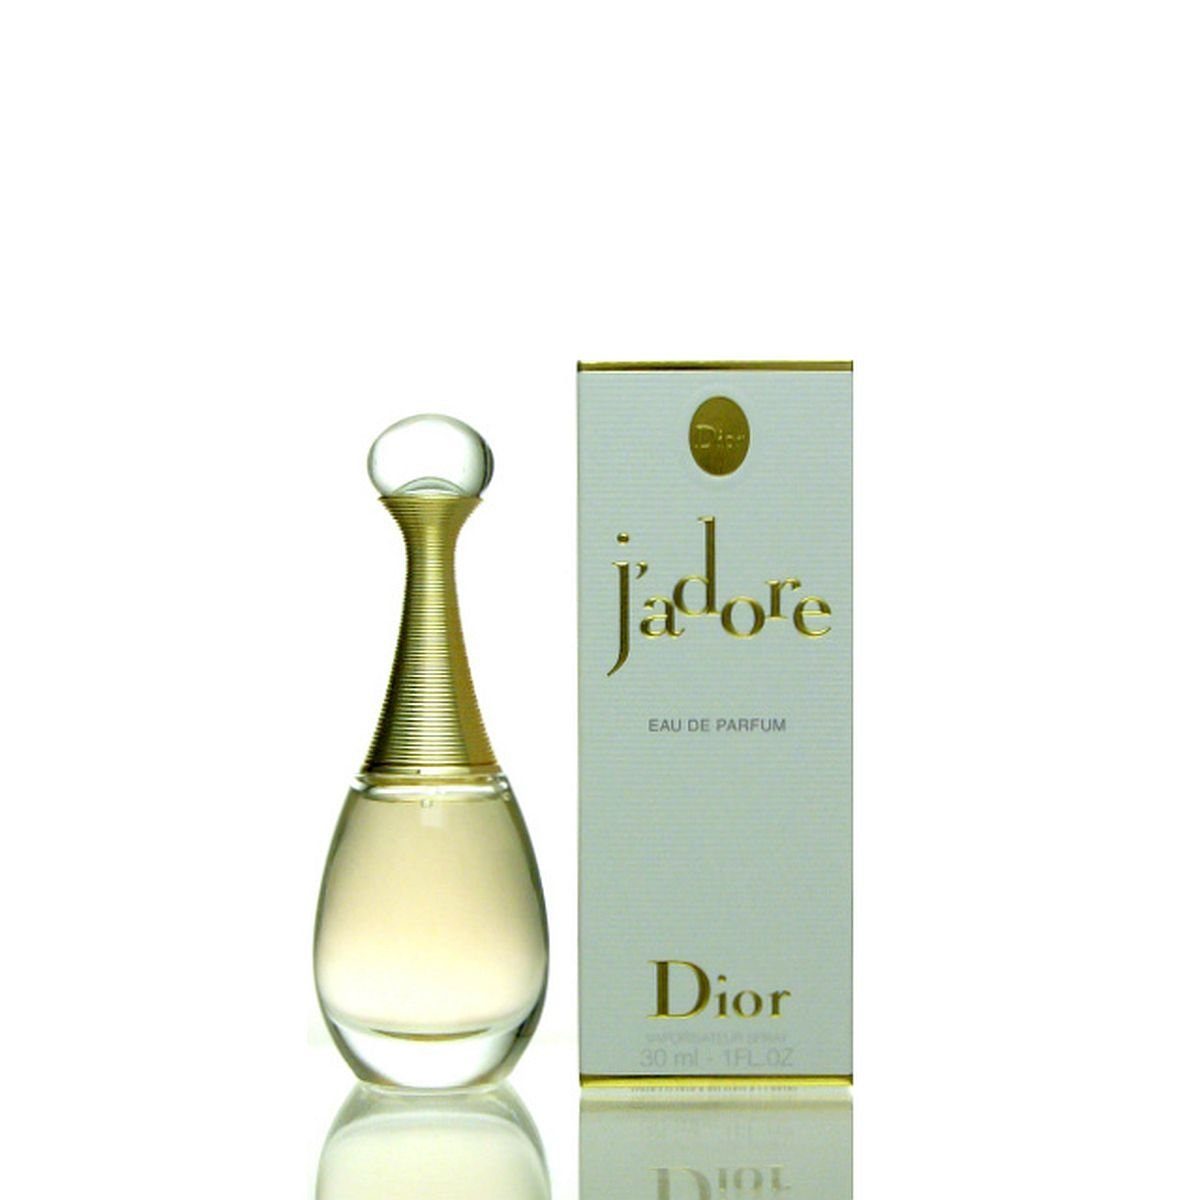 Dior Eau de Parfum Christian Dior Jadore (J'adore) Eau de Parfum 30, Dior J' adore Eau de Parfum